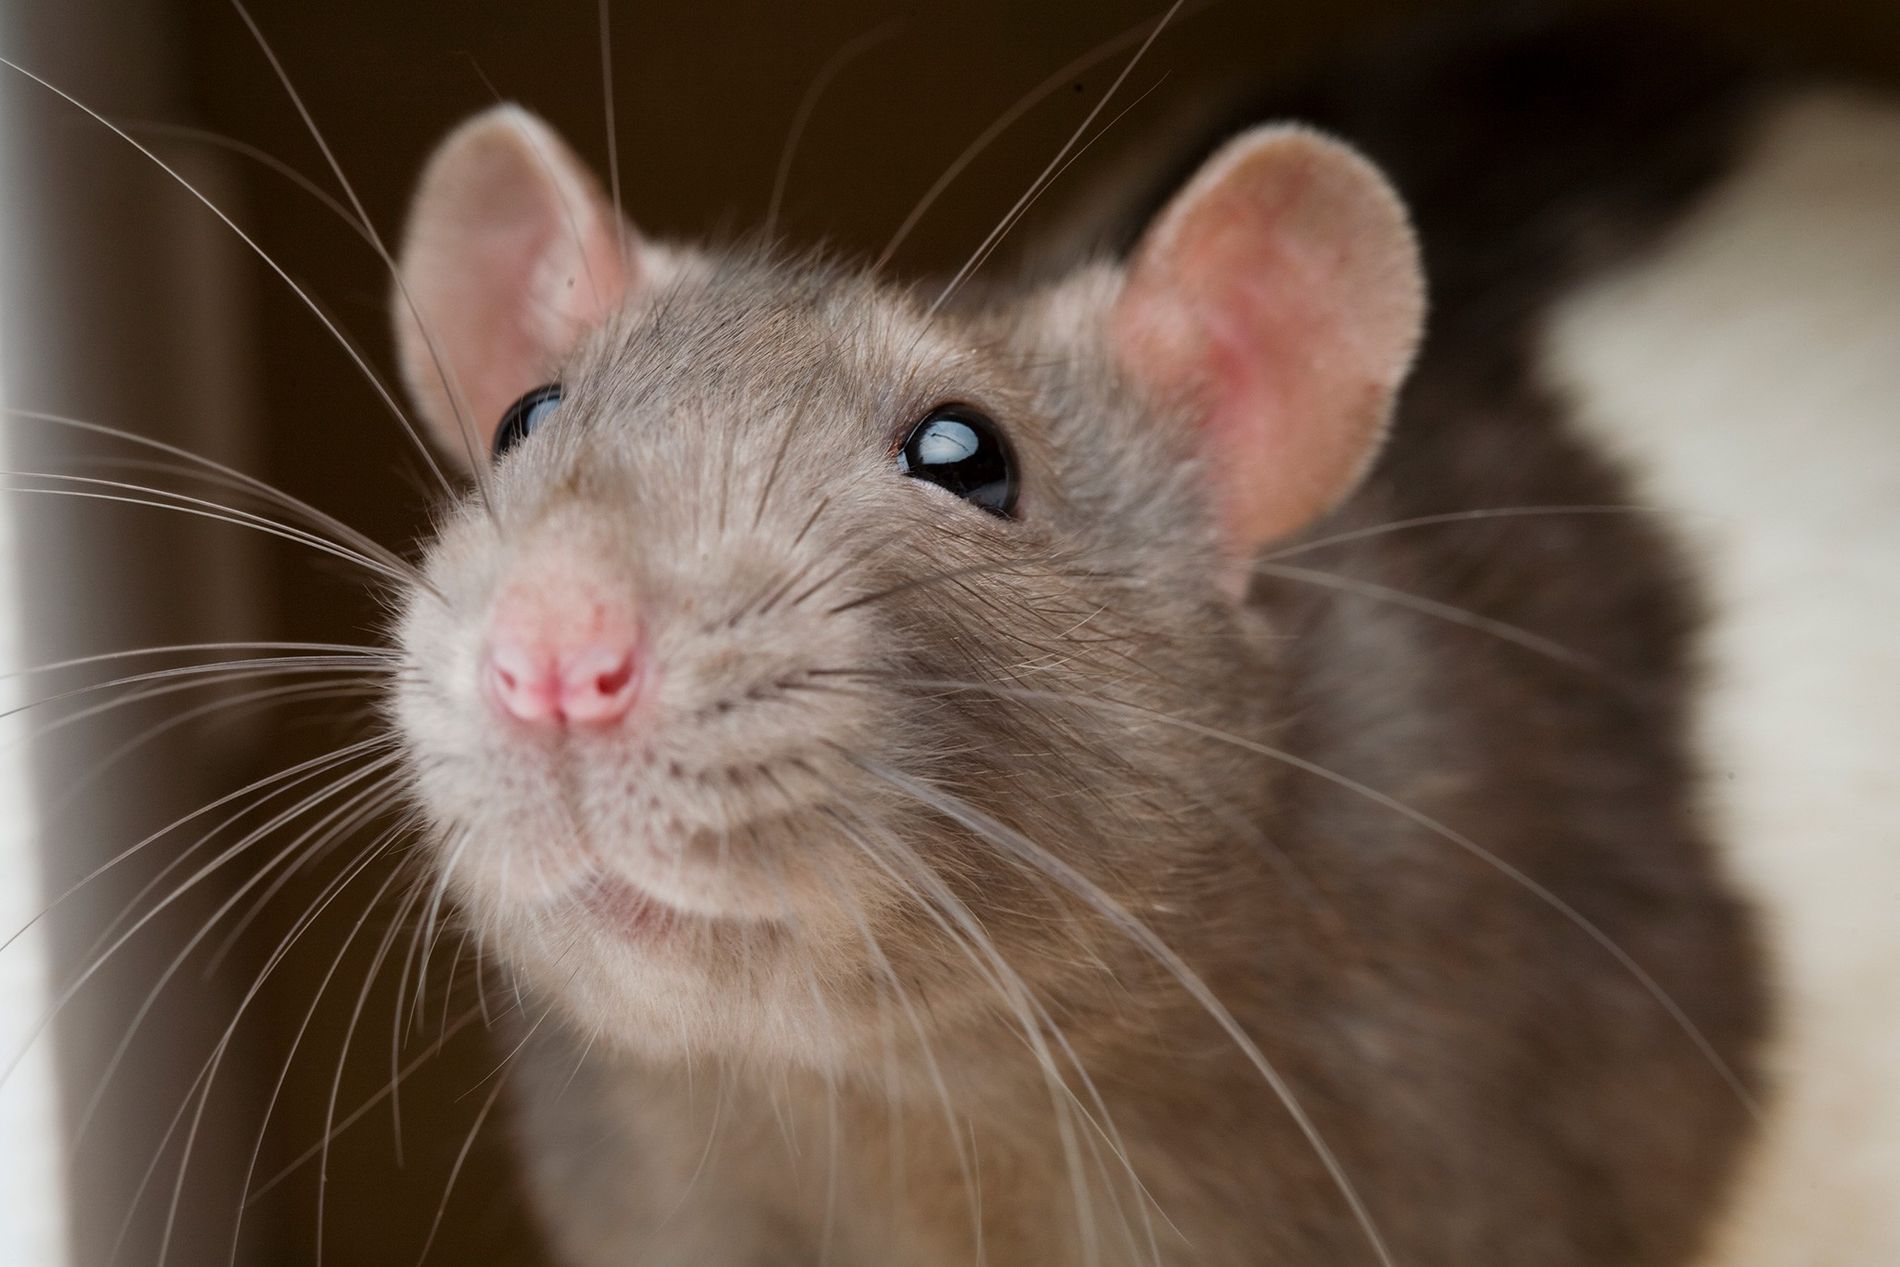 Video: rata destroza más de 15 mil pesos en ahorros